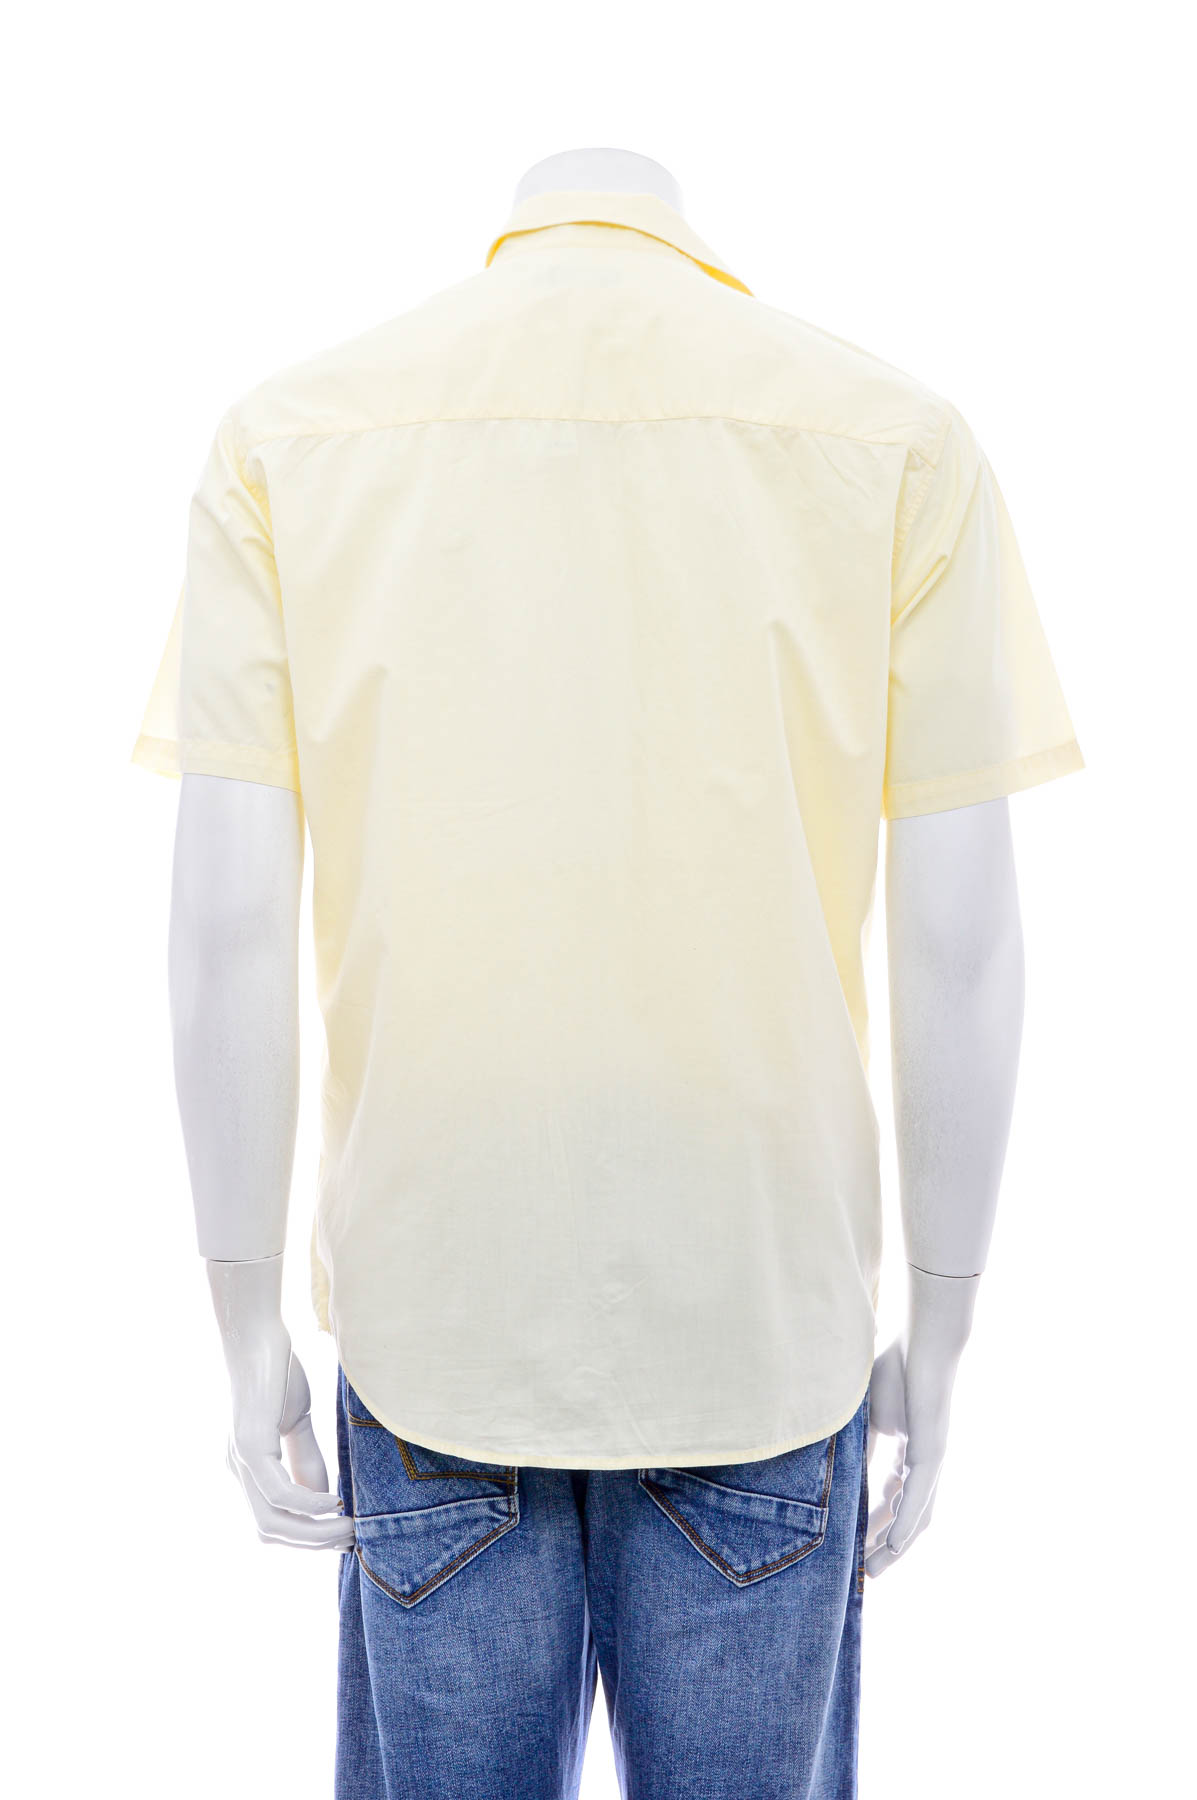 Men's shirt - Yannick - 1